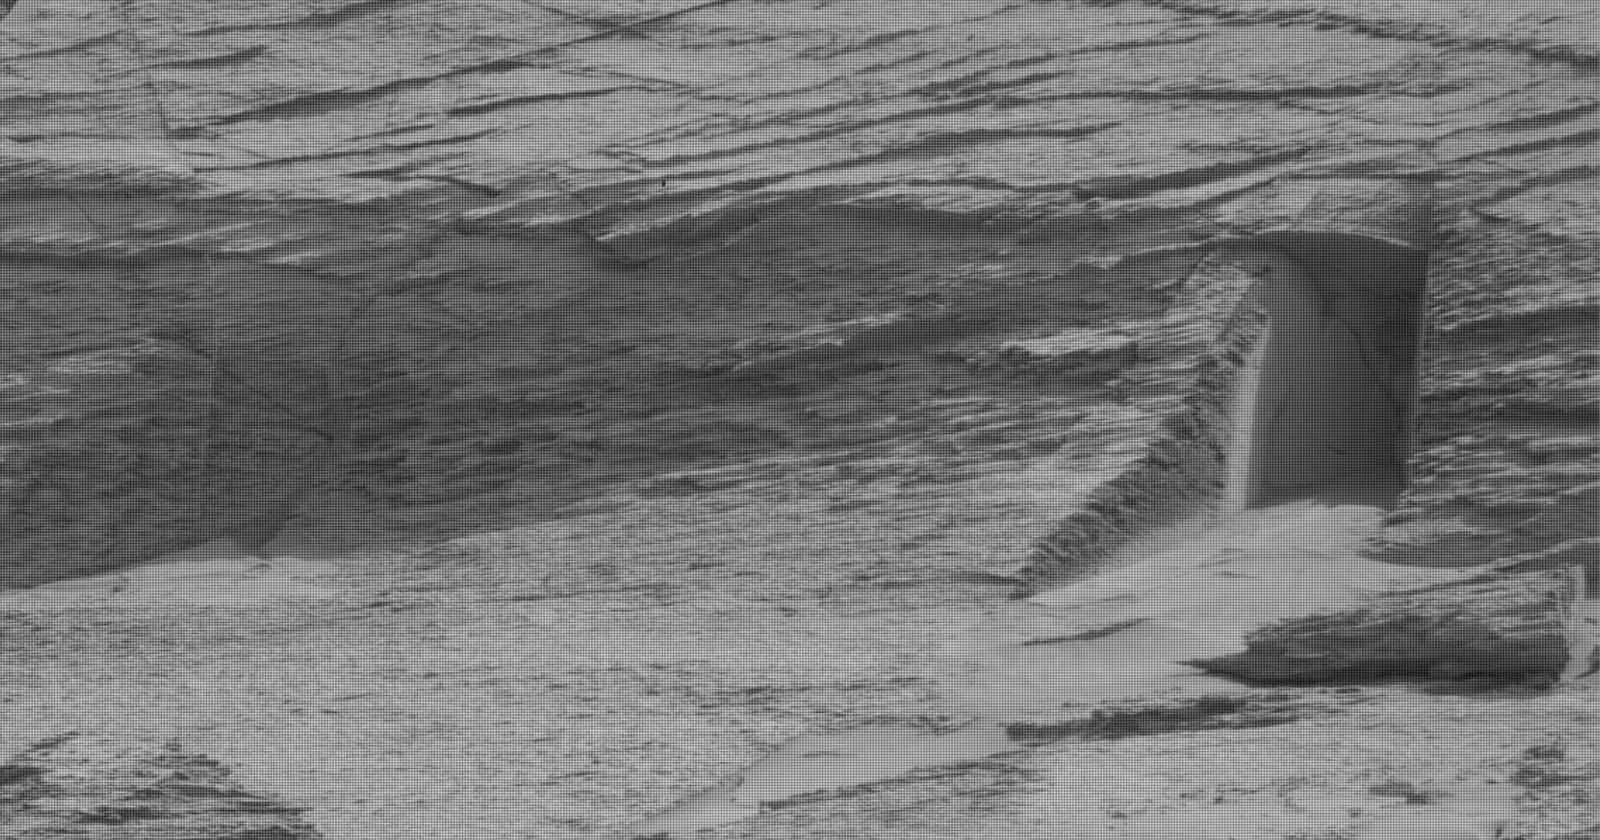 Mars Curiosity Rover, Mars’ta bir ‘kapının’ fotoğrafını çekiyor